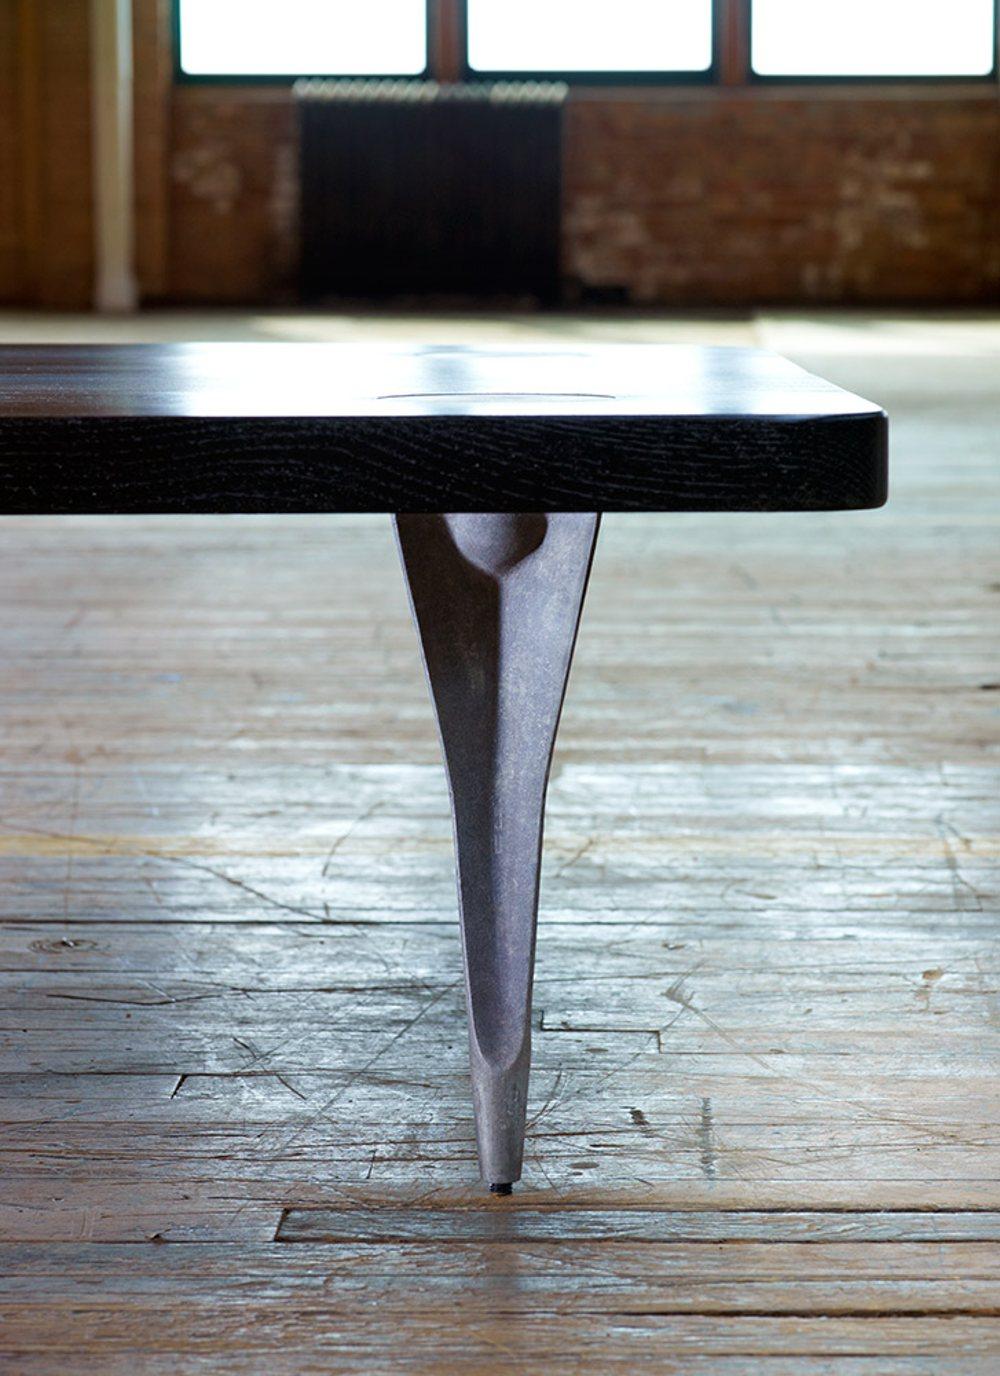 Cette table basse polyvalente peut être personnalisée en termes de taille, de forme et d'essence. Les pieds sont préfabriqués et les plateaux sont fabriqués sur commande. 

Fondée en 2011, AKMD est née d'une amitié et d'une collaboration de treize